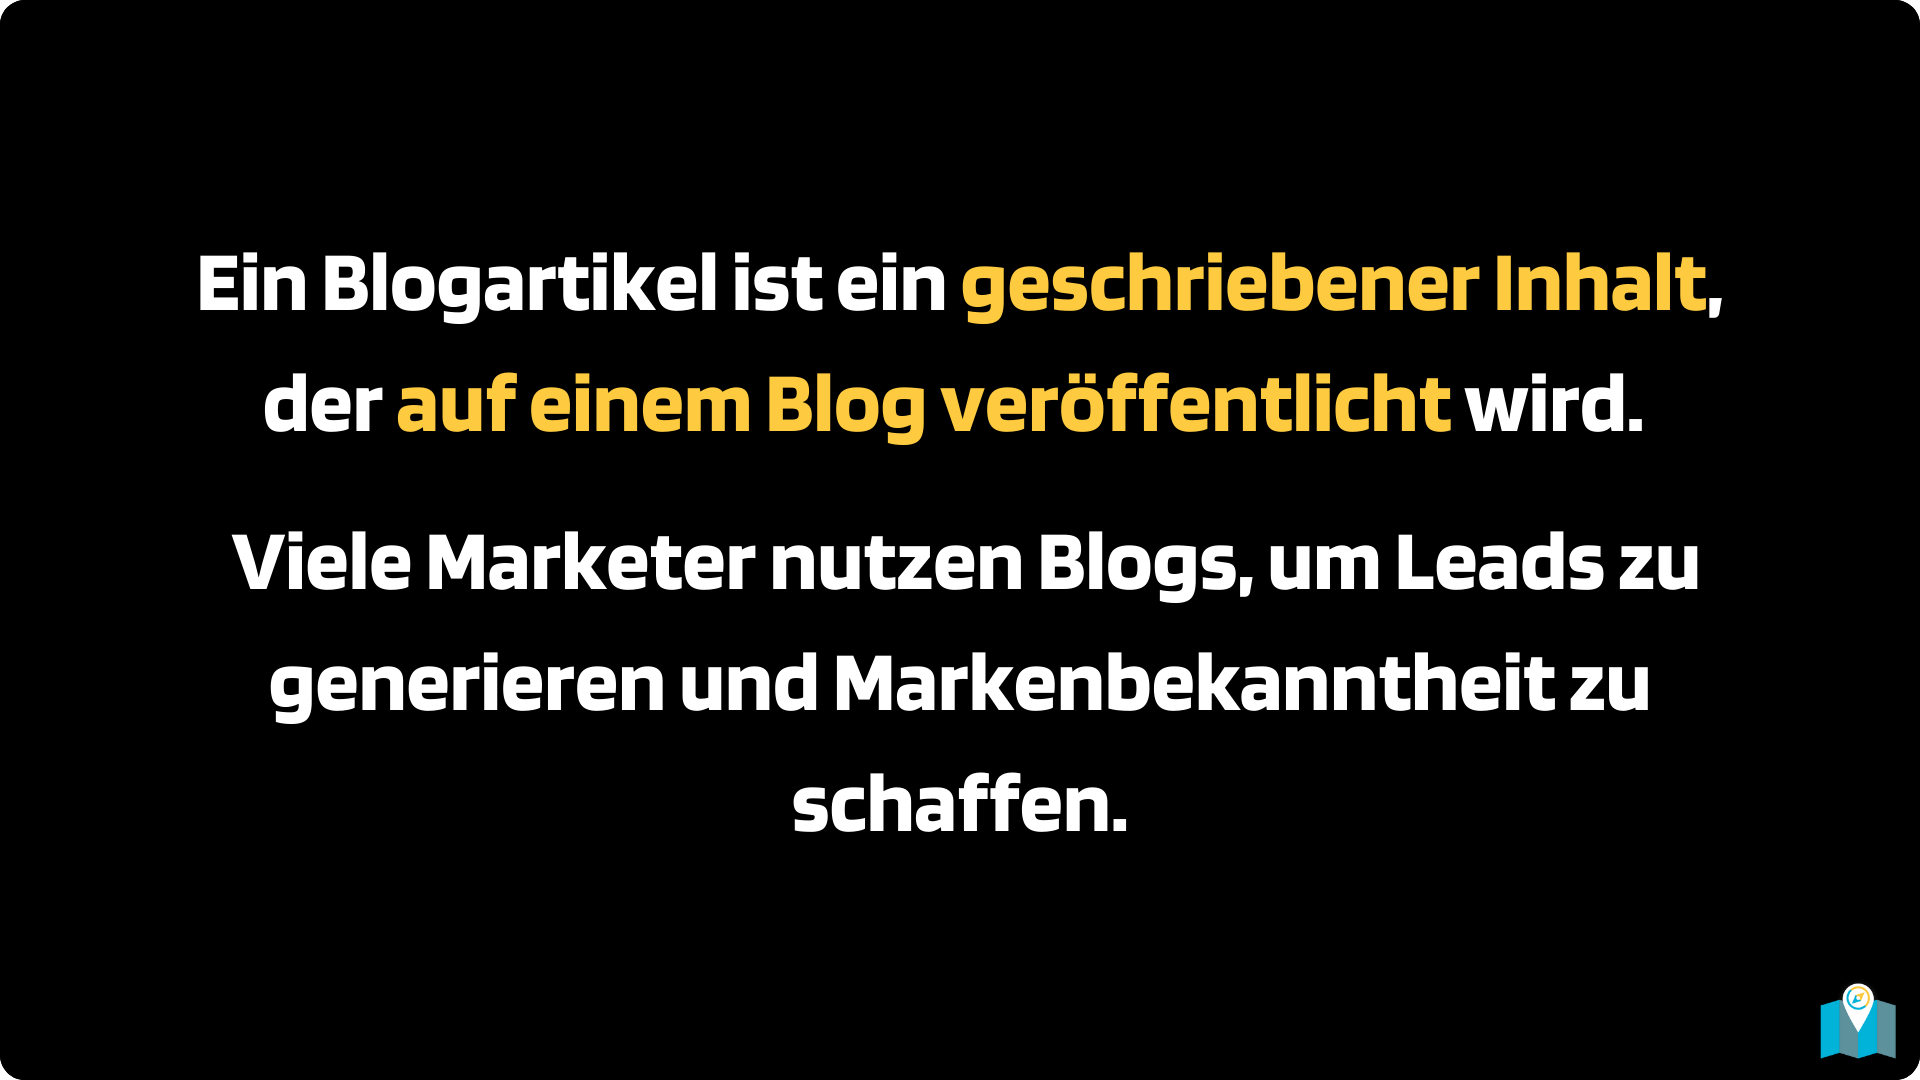 Ein Blogartikel ist ein geschriebener Inhalt, der auf einem Blog veröffentlicht wird. Viele Marketer nutzen Blogs, um Leads zu generieren und Markenbekanntheit zu schaffen.